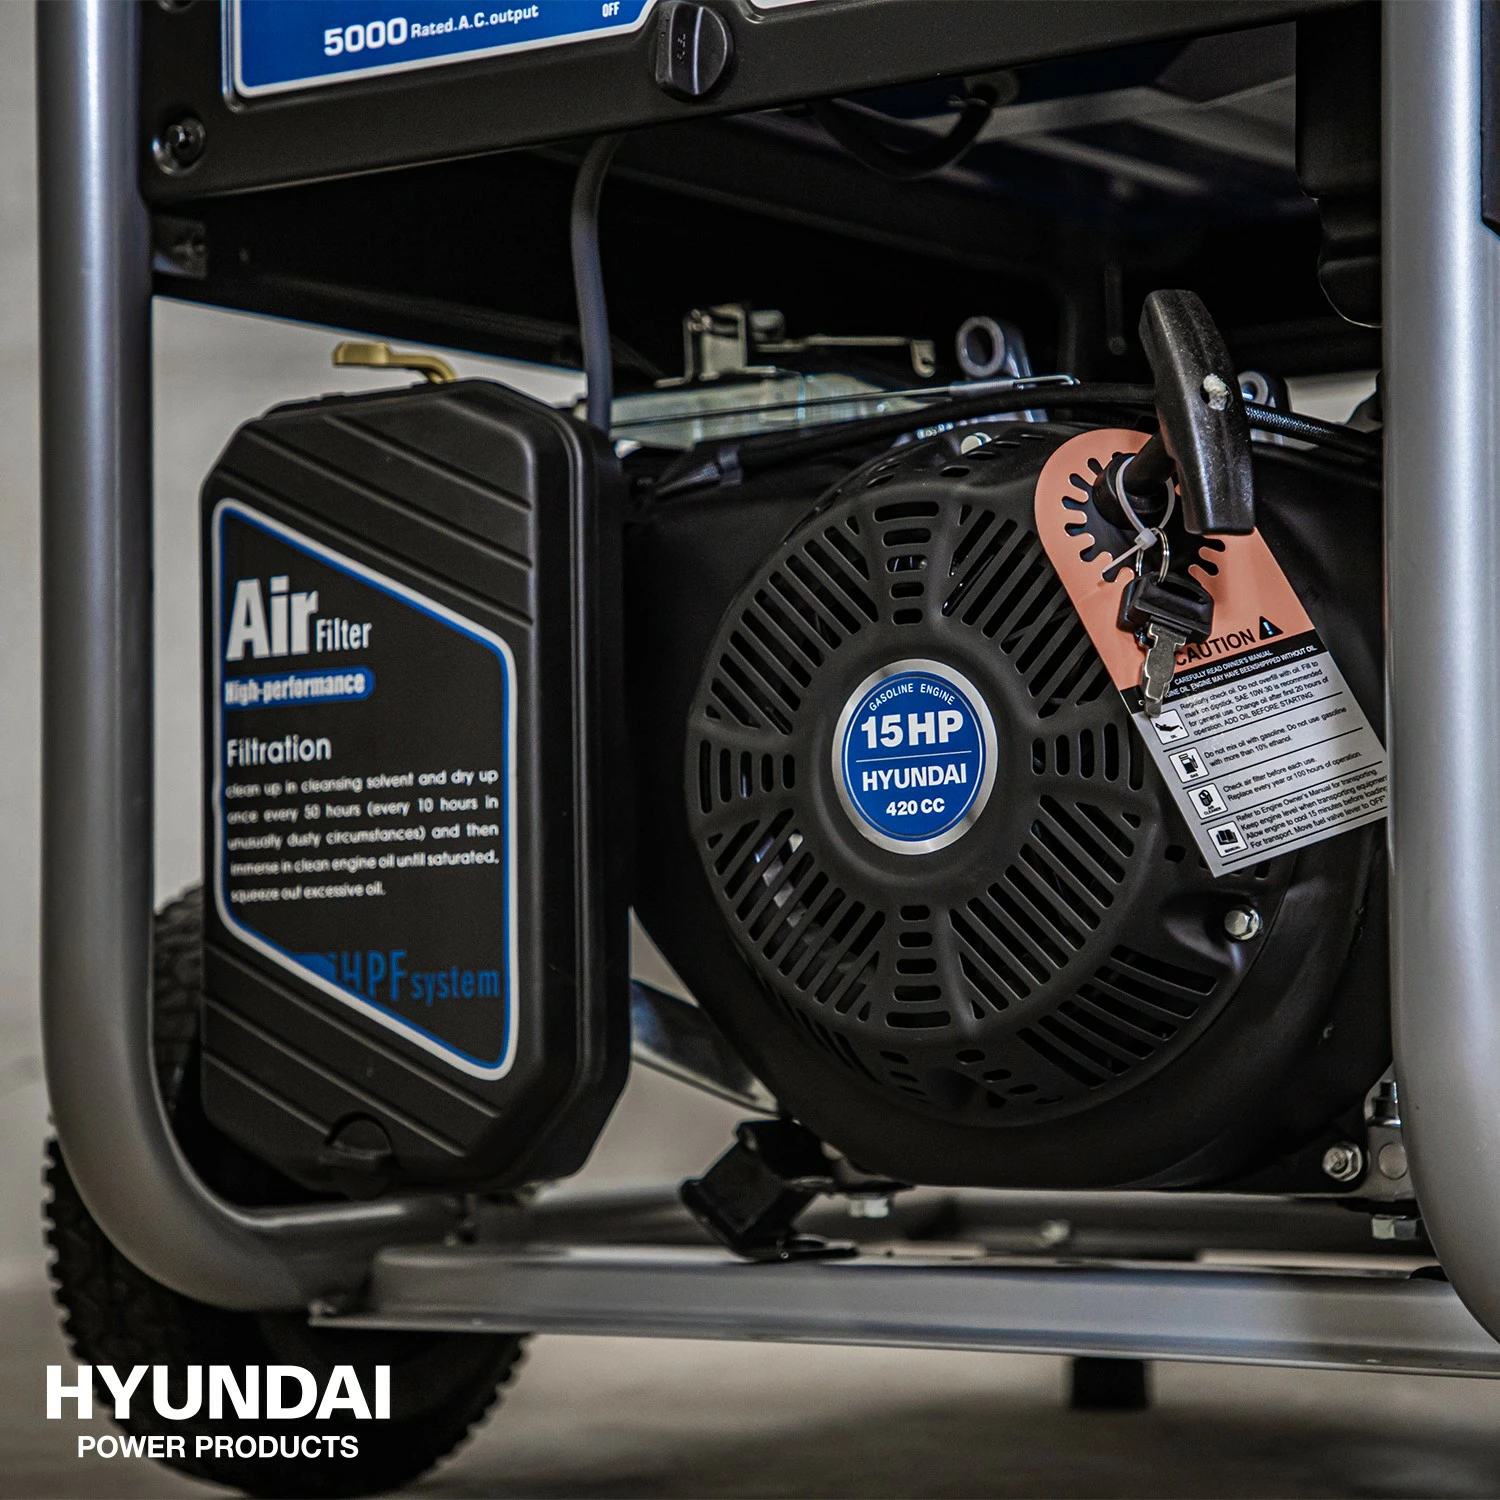 Hyundai 55053 Benzine generator met elektrische start - OHV Motor - 5500W